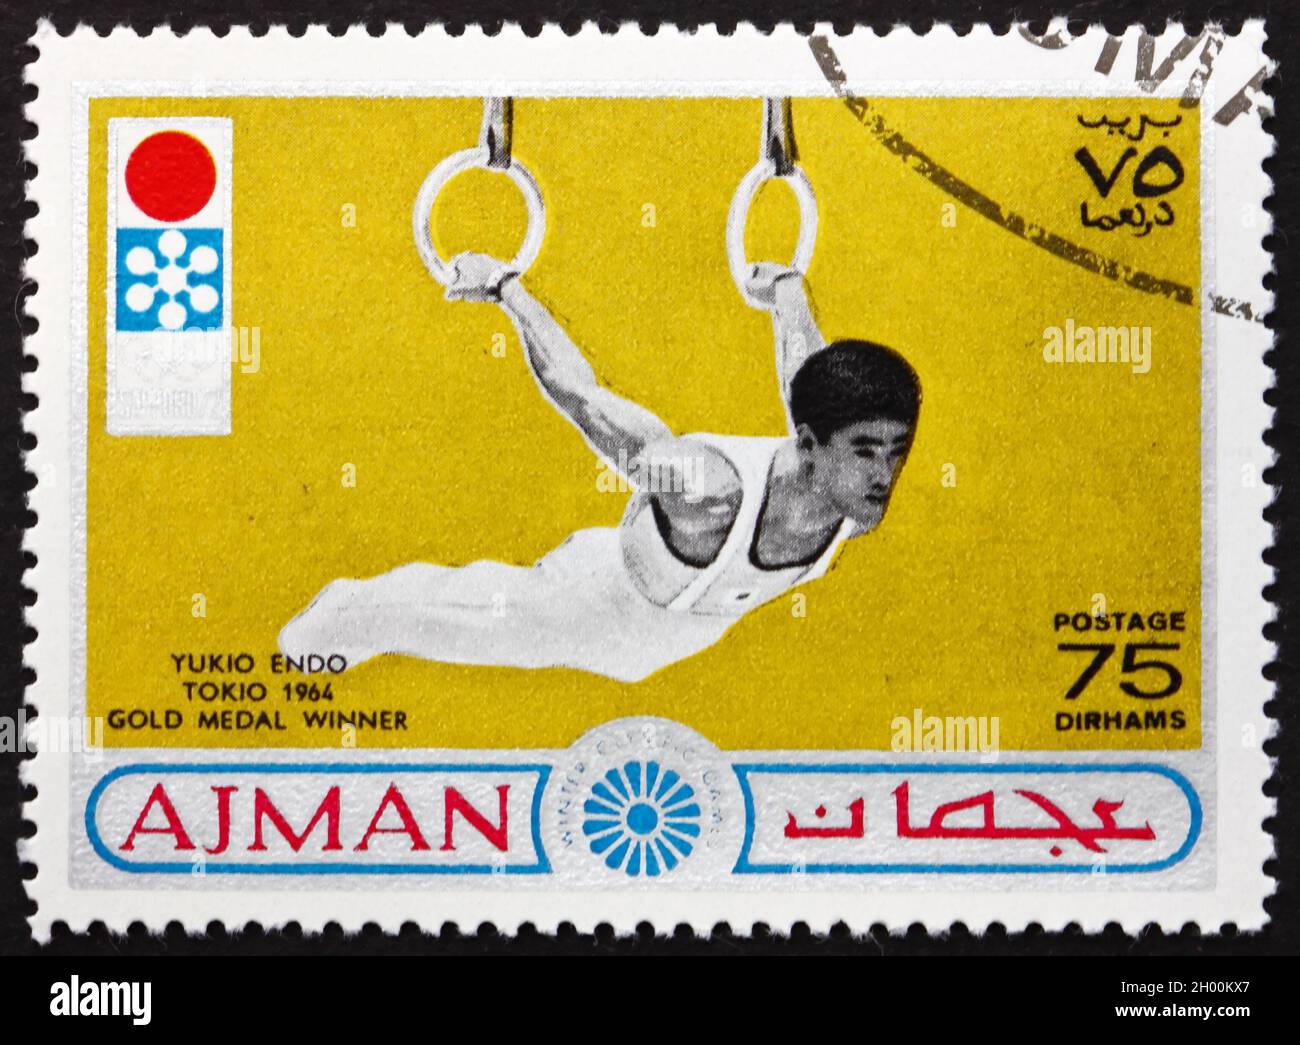 AJMAN - UM 1964: Eine auf Ajman gedruckte Briefmarke zeigt Yukio Endo, japanische Kunstturnerin, Gewinner der Tokio 1964 Goldmedaille, um 1964 Stockfoto